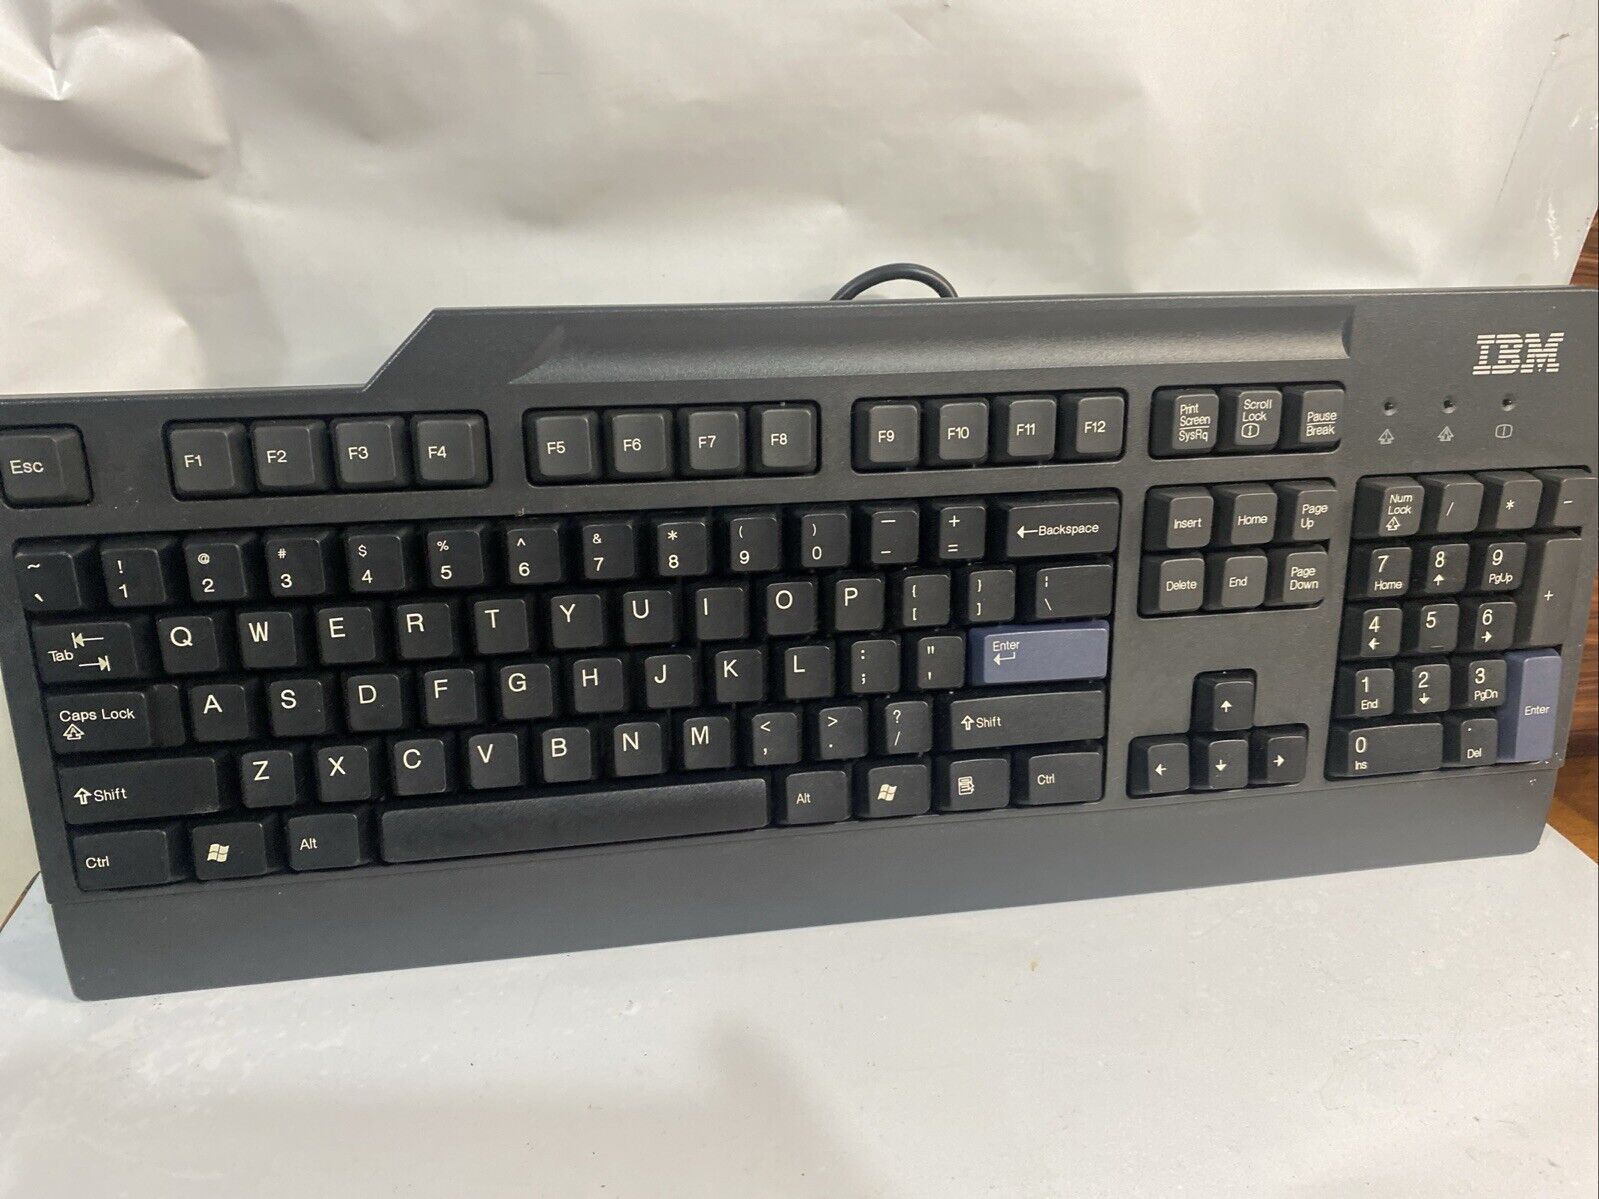 Black IBM Keyboard Model KB-0225. No Box. No Plastic Cover. E11